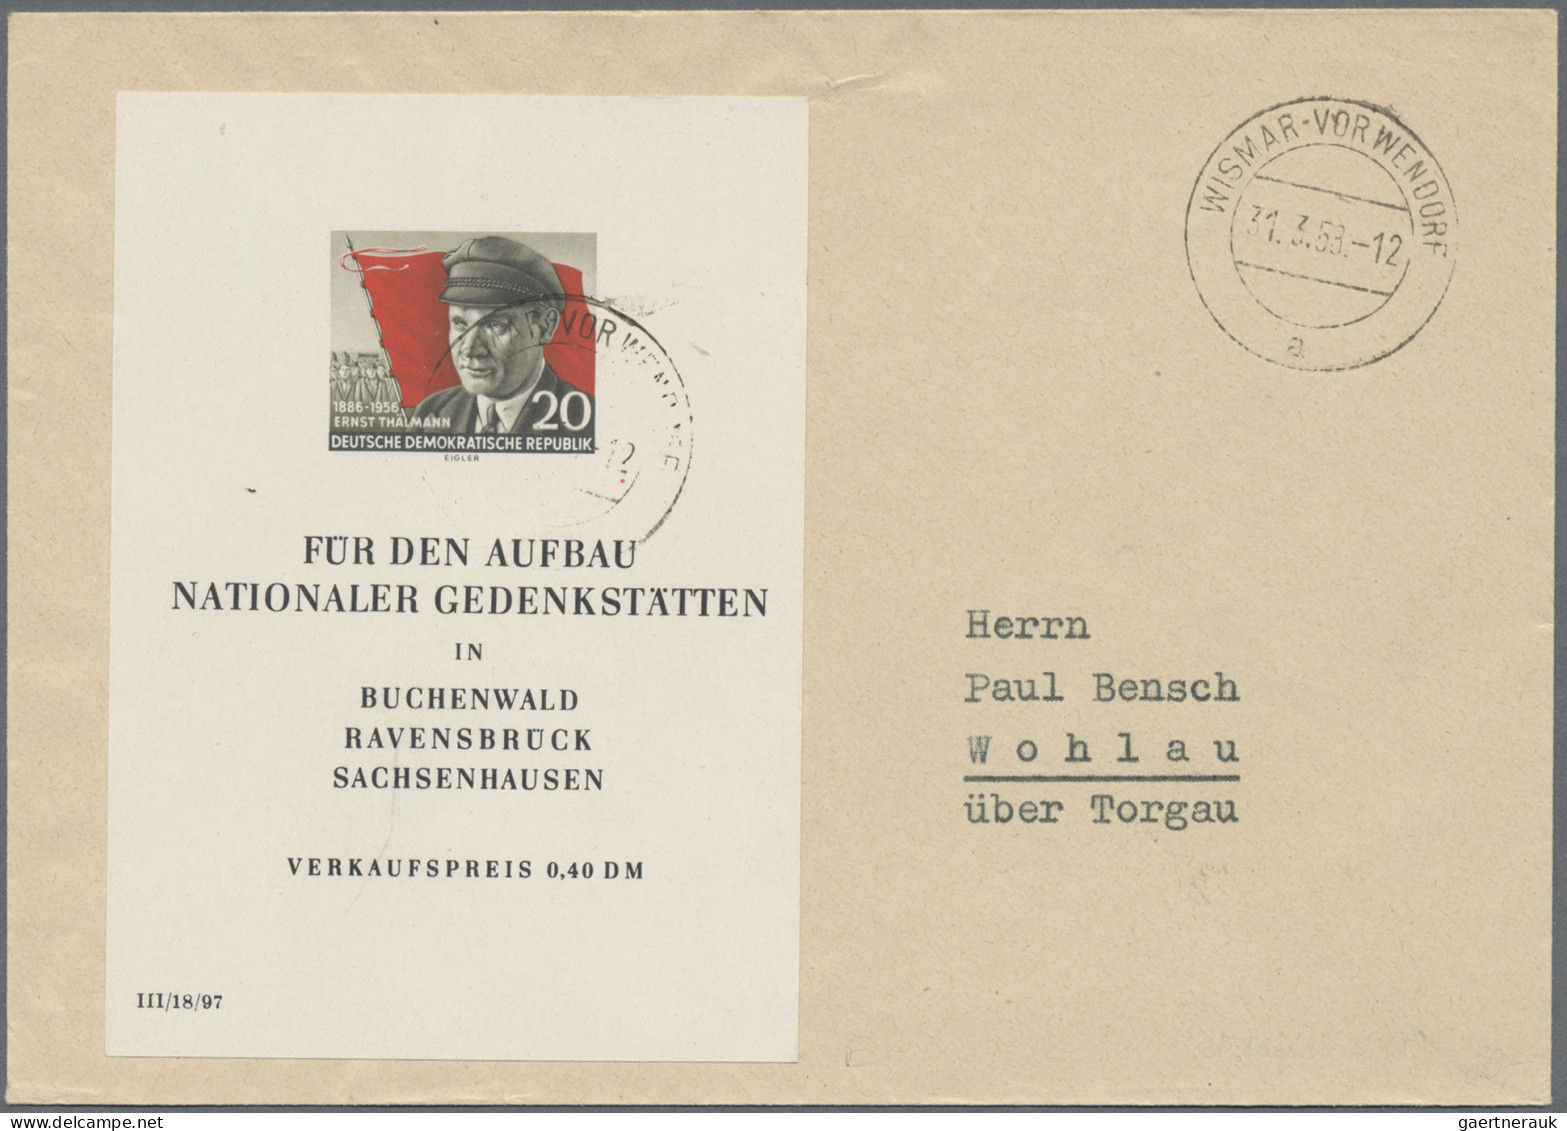 DDR: 1950/1966, Partie von 39 Briefen und Karten mit interessanten Frankaturen d